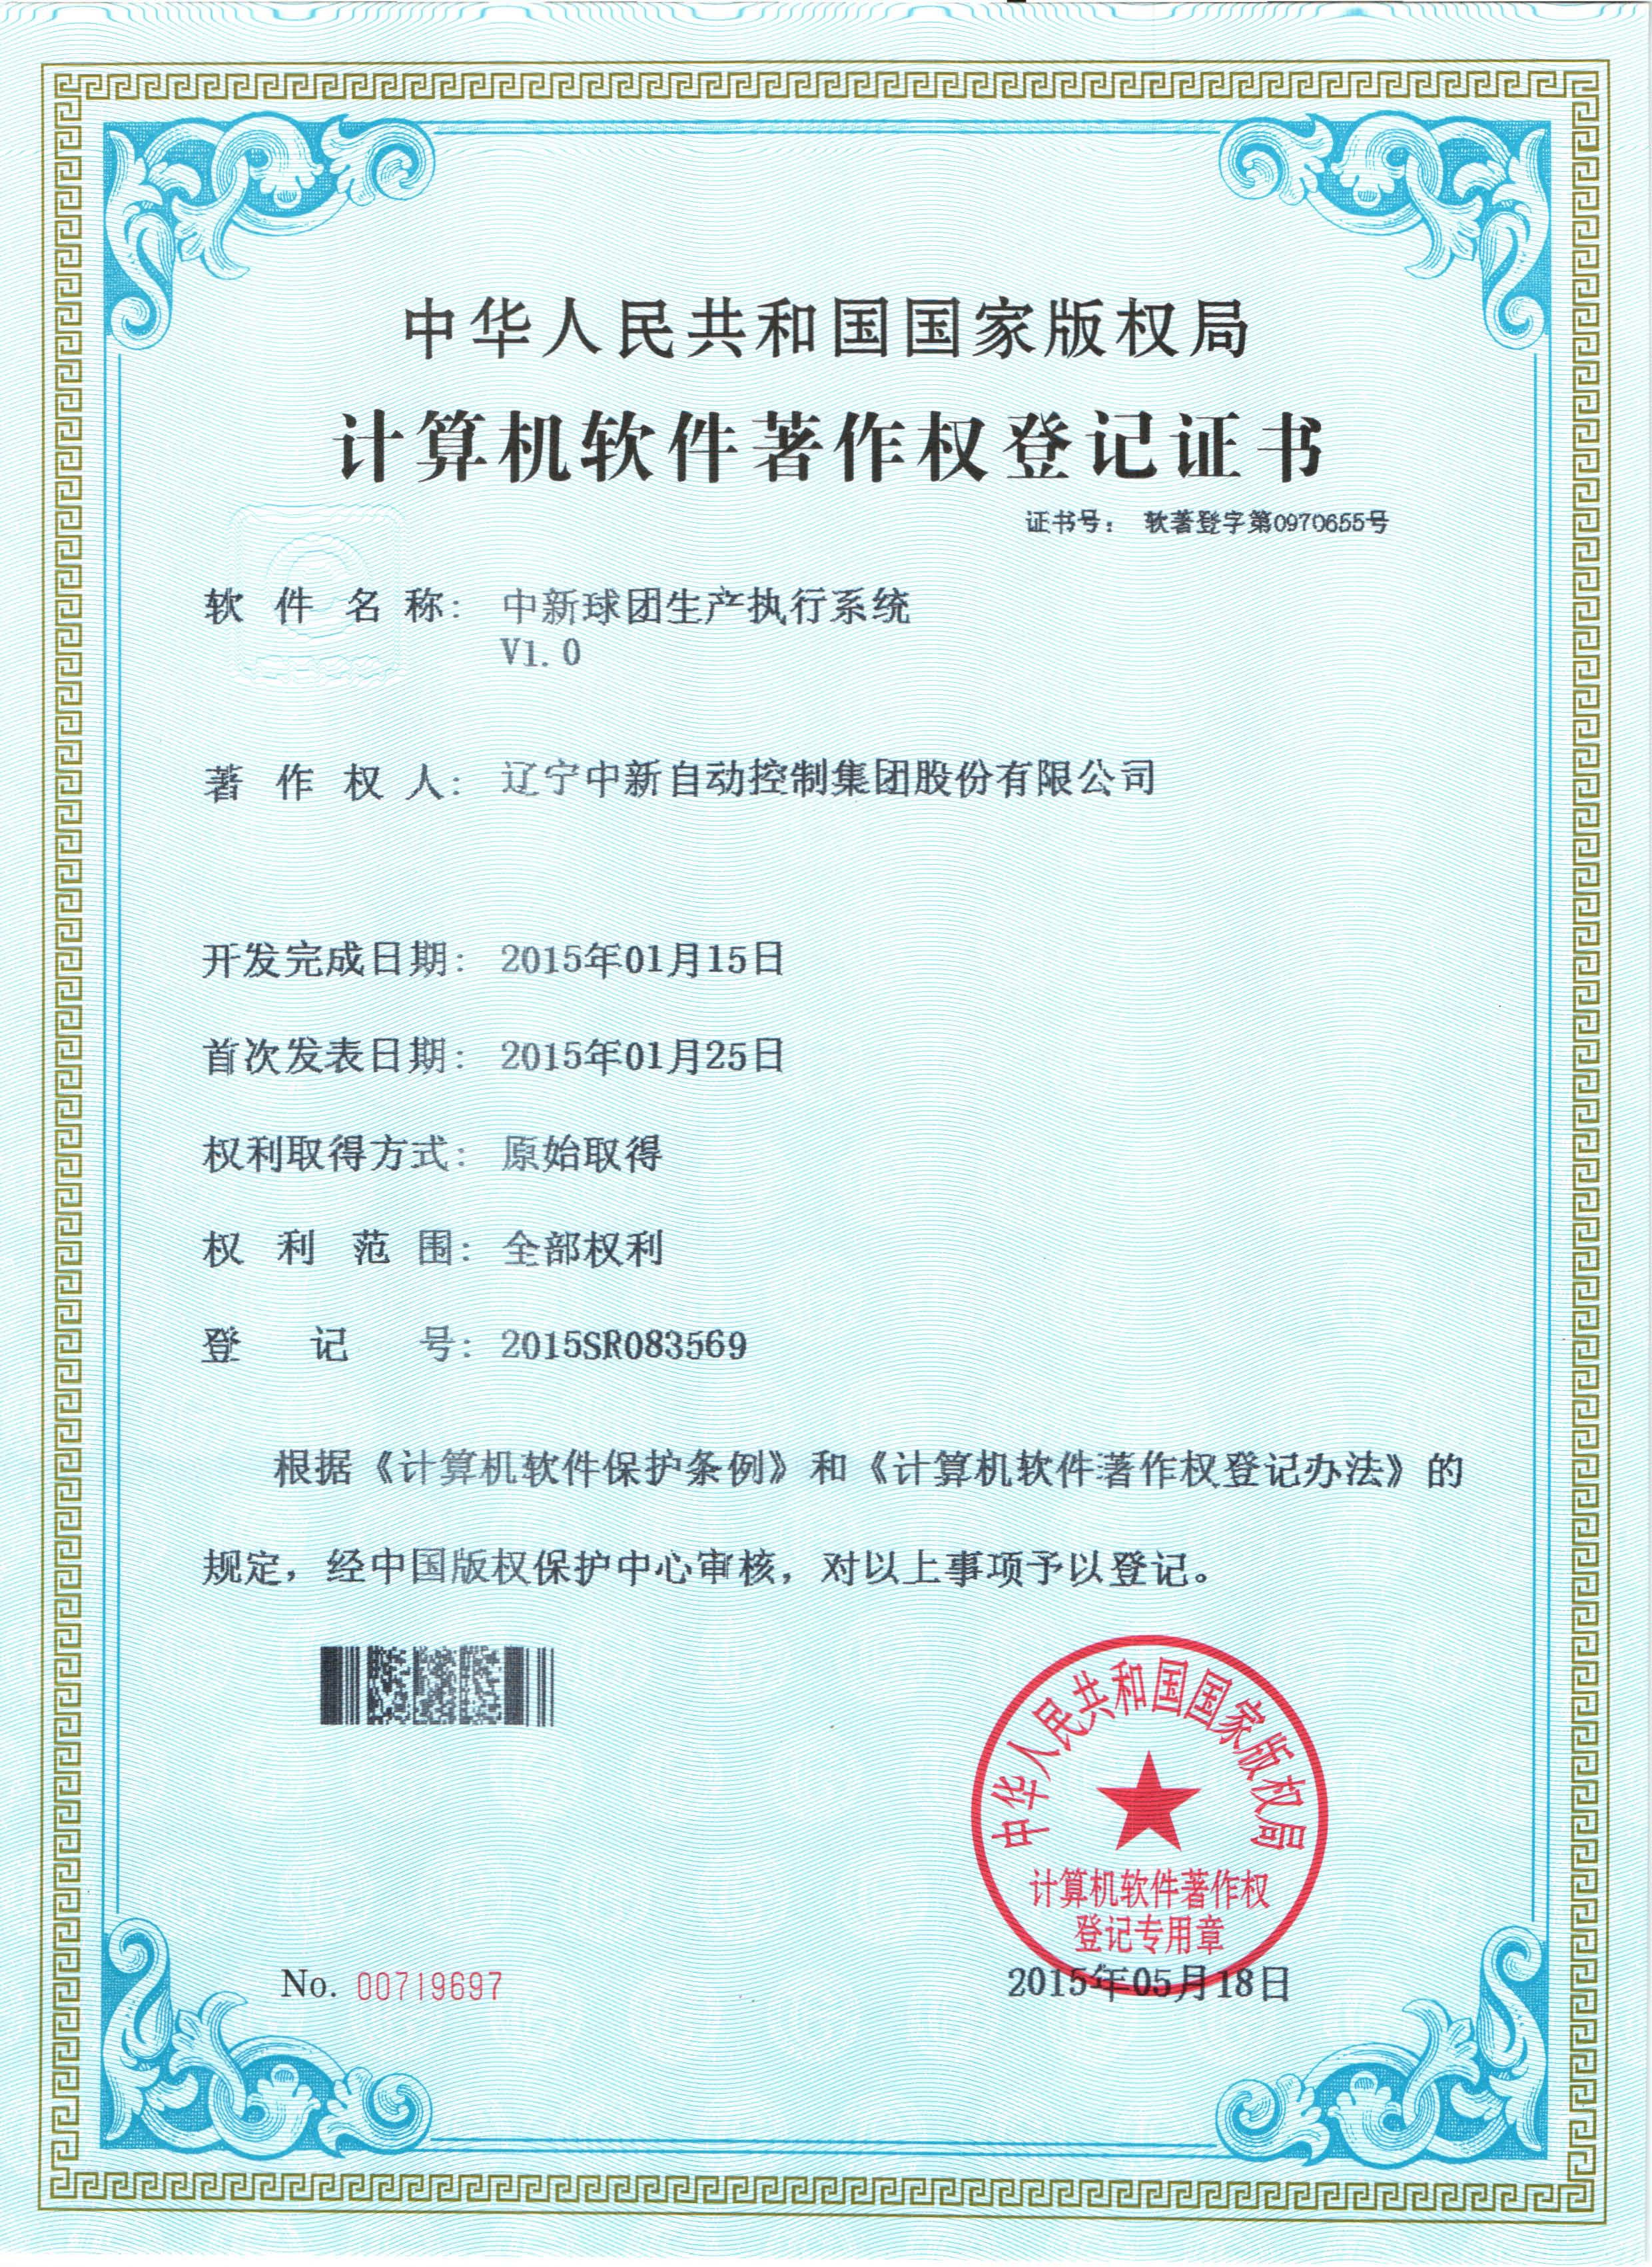 中新球团生产执行系统-资质证书-辽宁中新